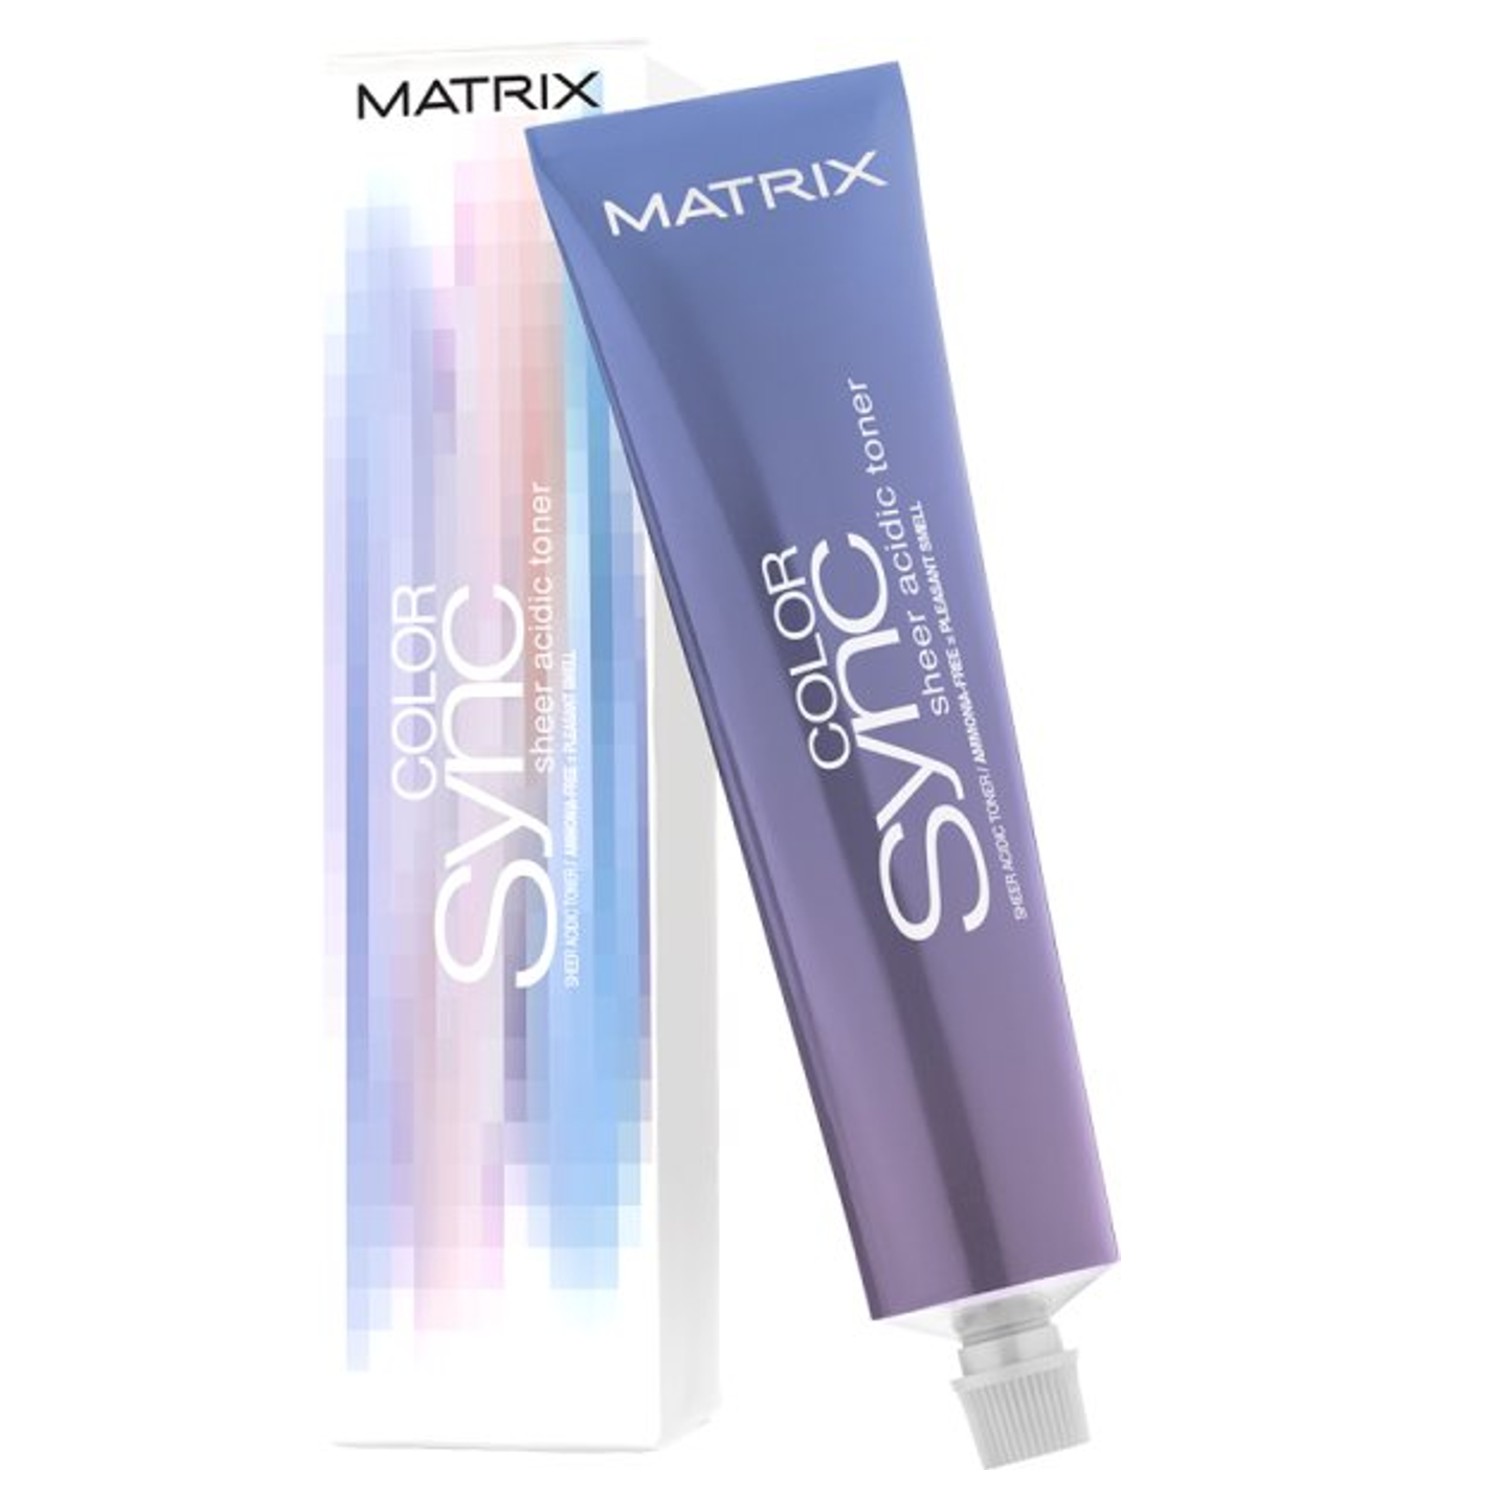 Matrix Color Sync Sheer Acidic Toner 90 ml